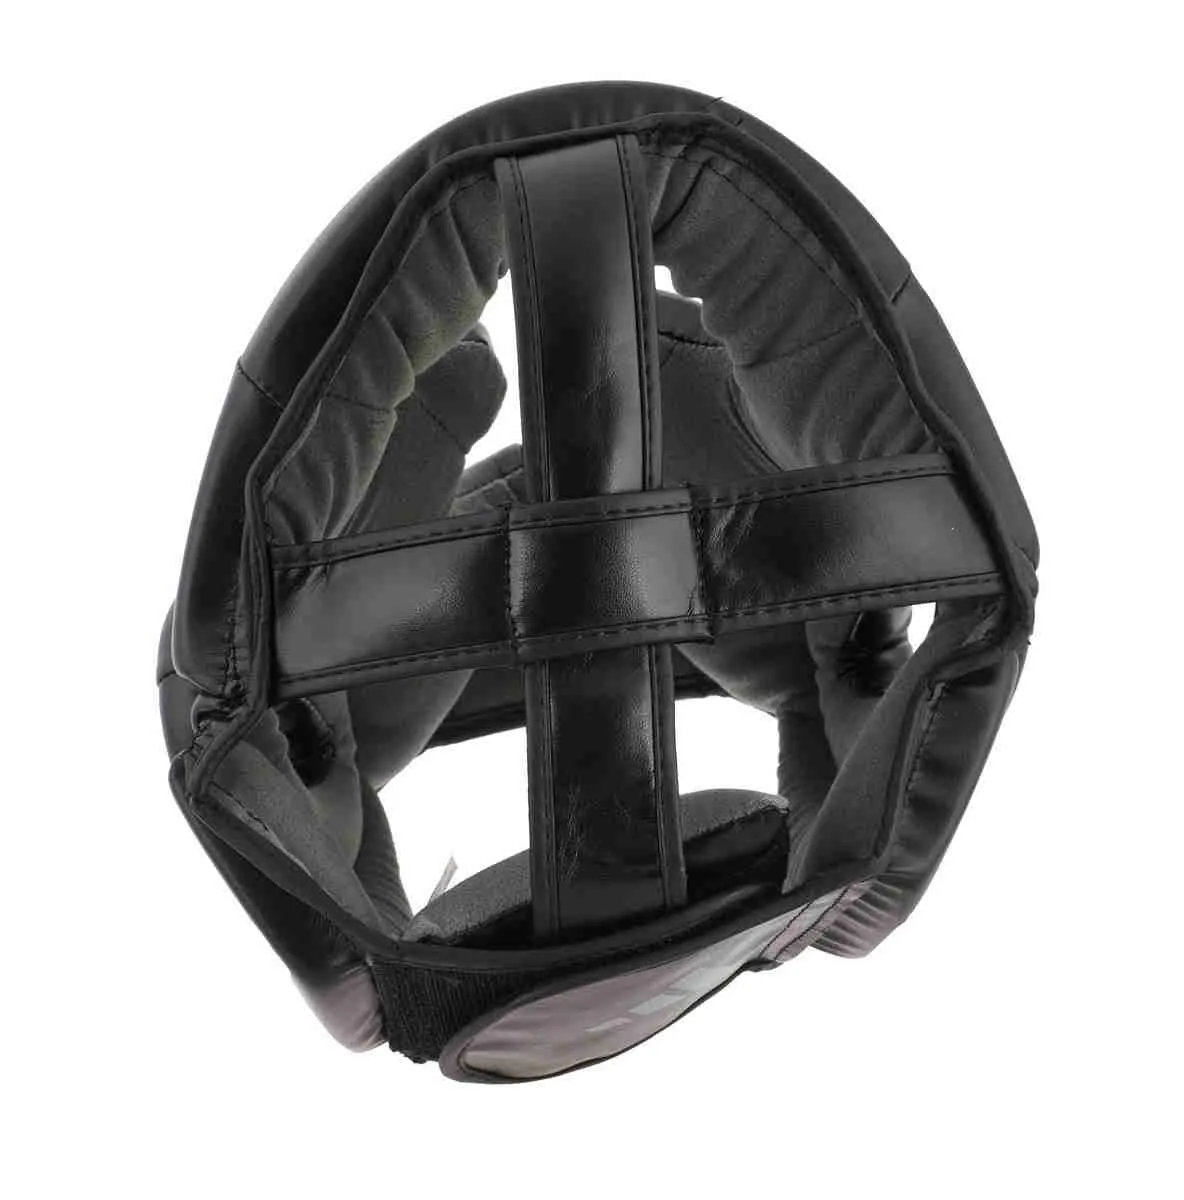 Protection de tête adidas SPEED Super Pro noir|gris argenté